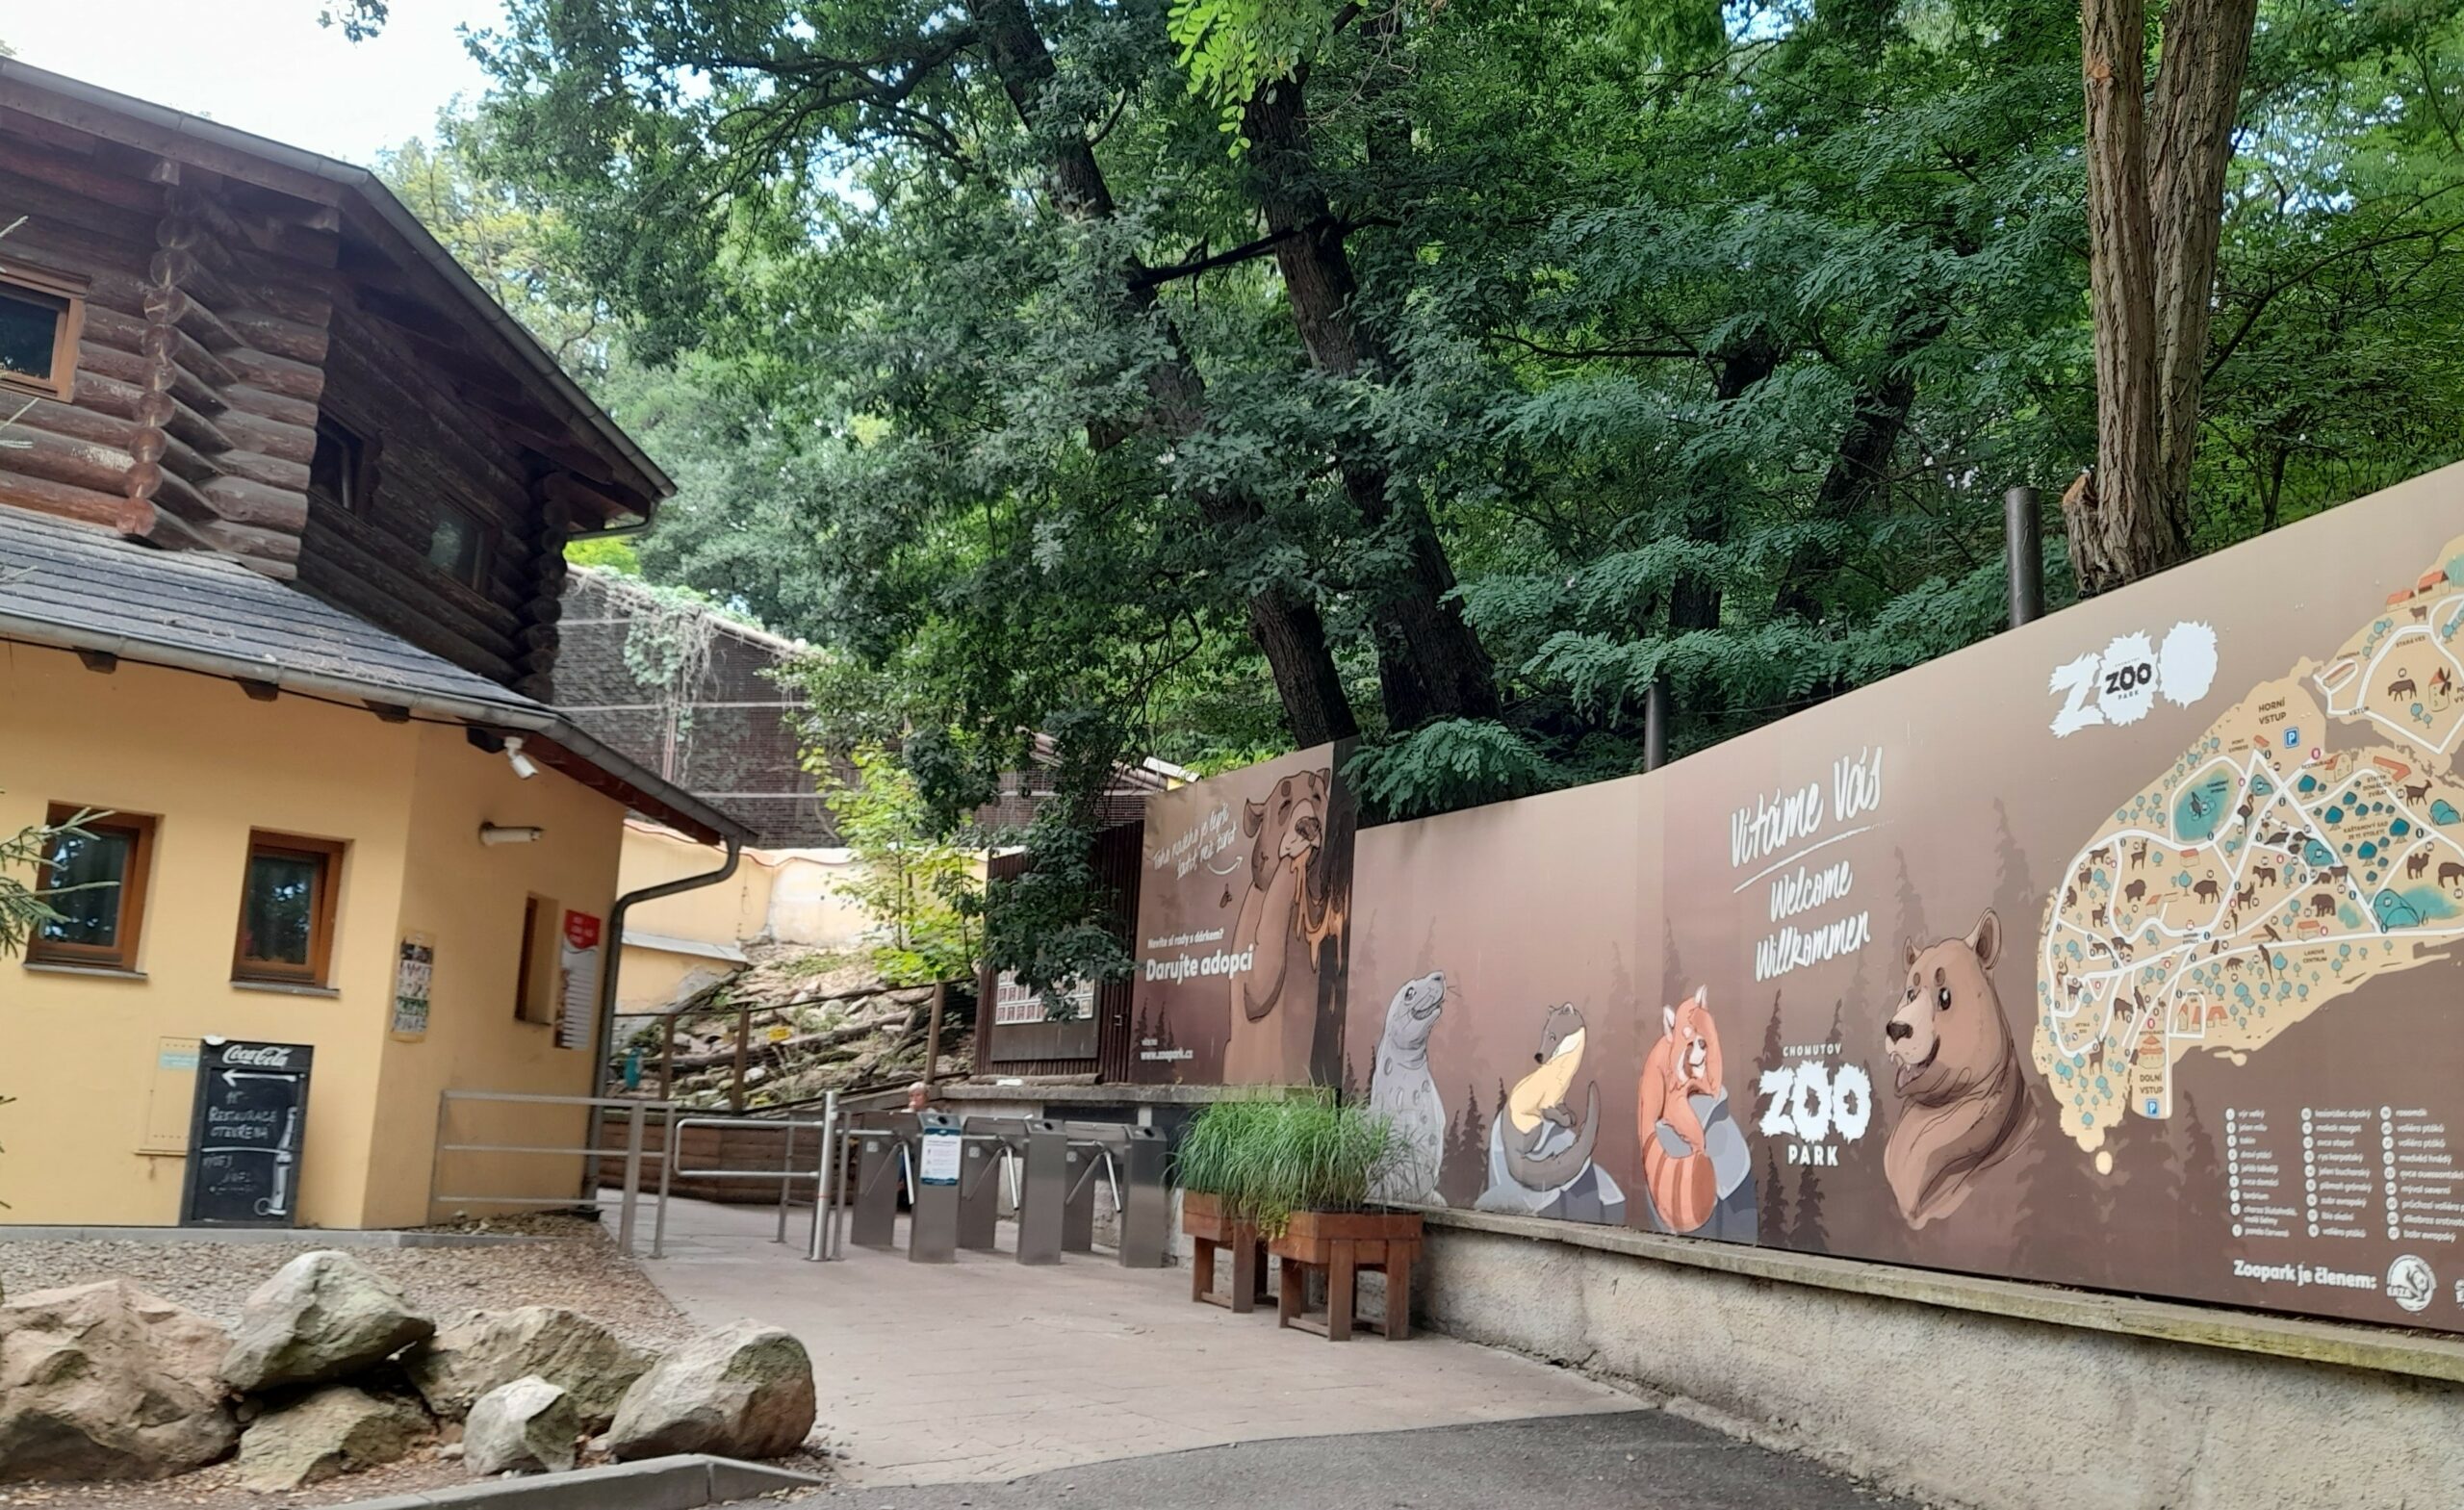 V Zooparku Chomutov na severu Čech se nikdo nudit nebude